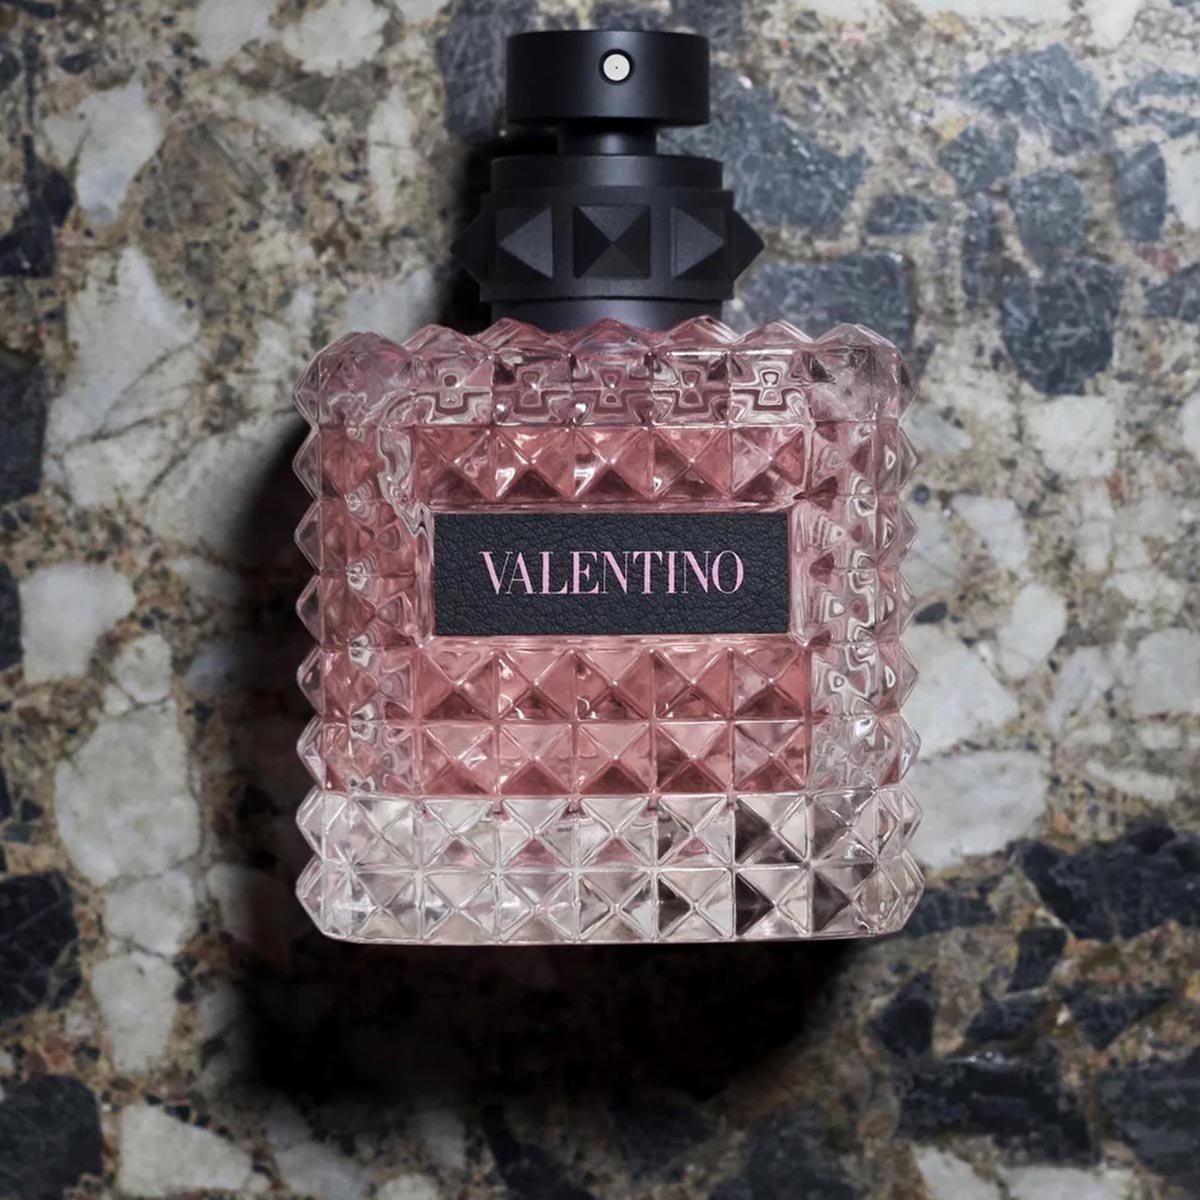 Valentino Donna Born In Roma EDP - My Perfume Shop Australia